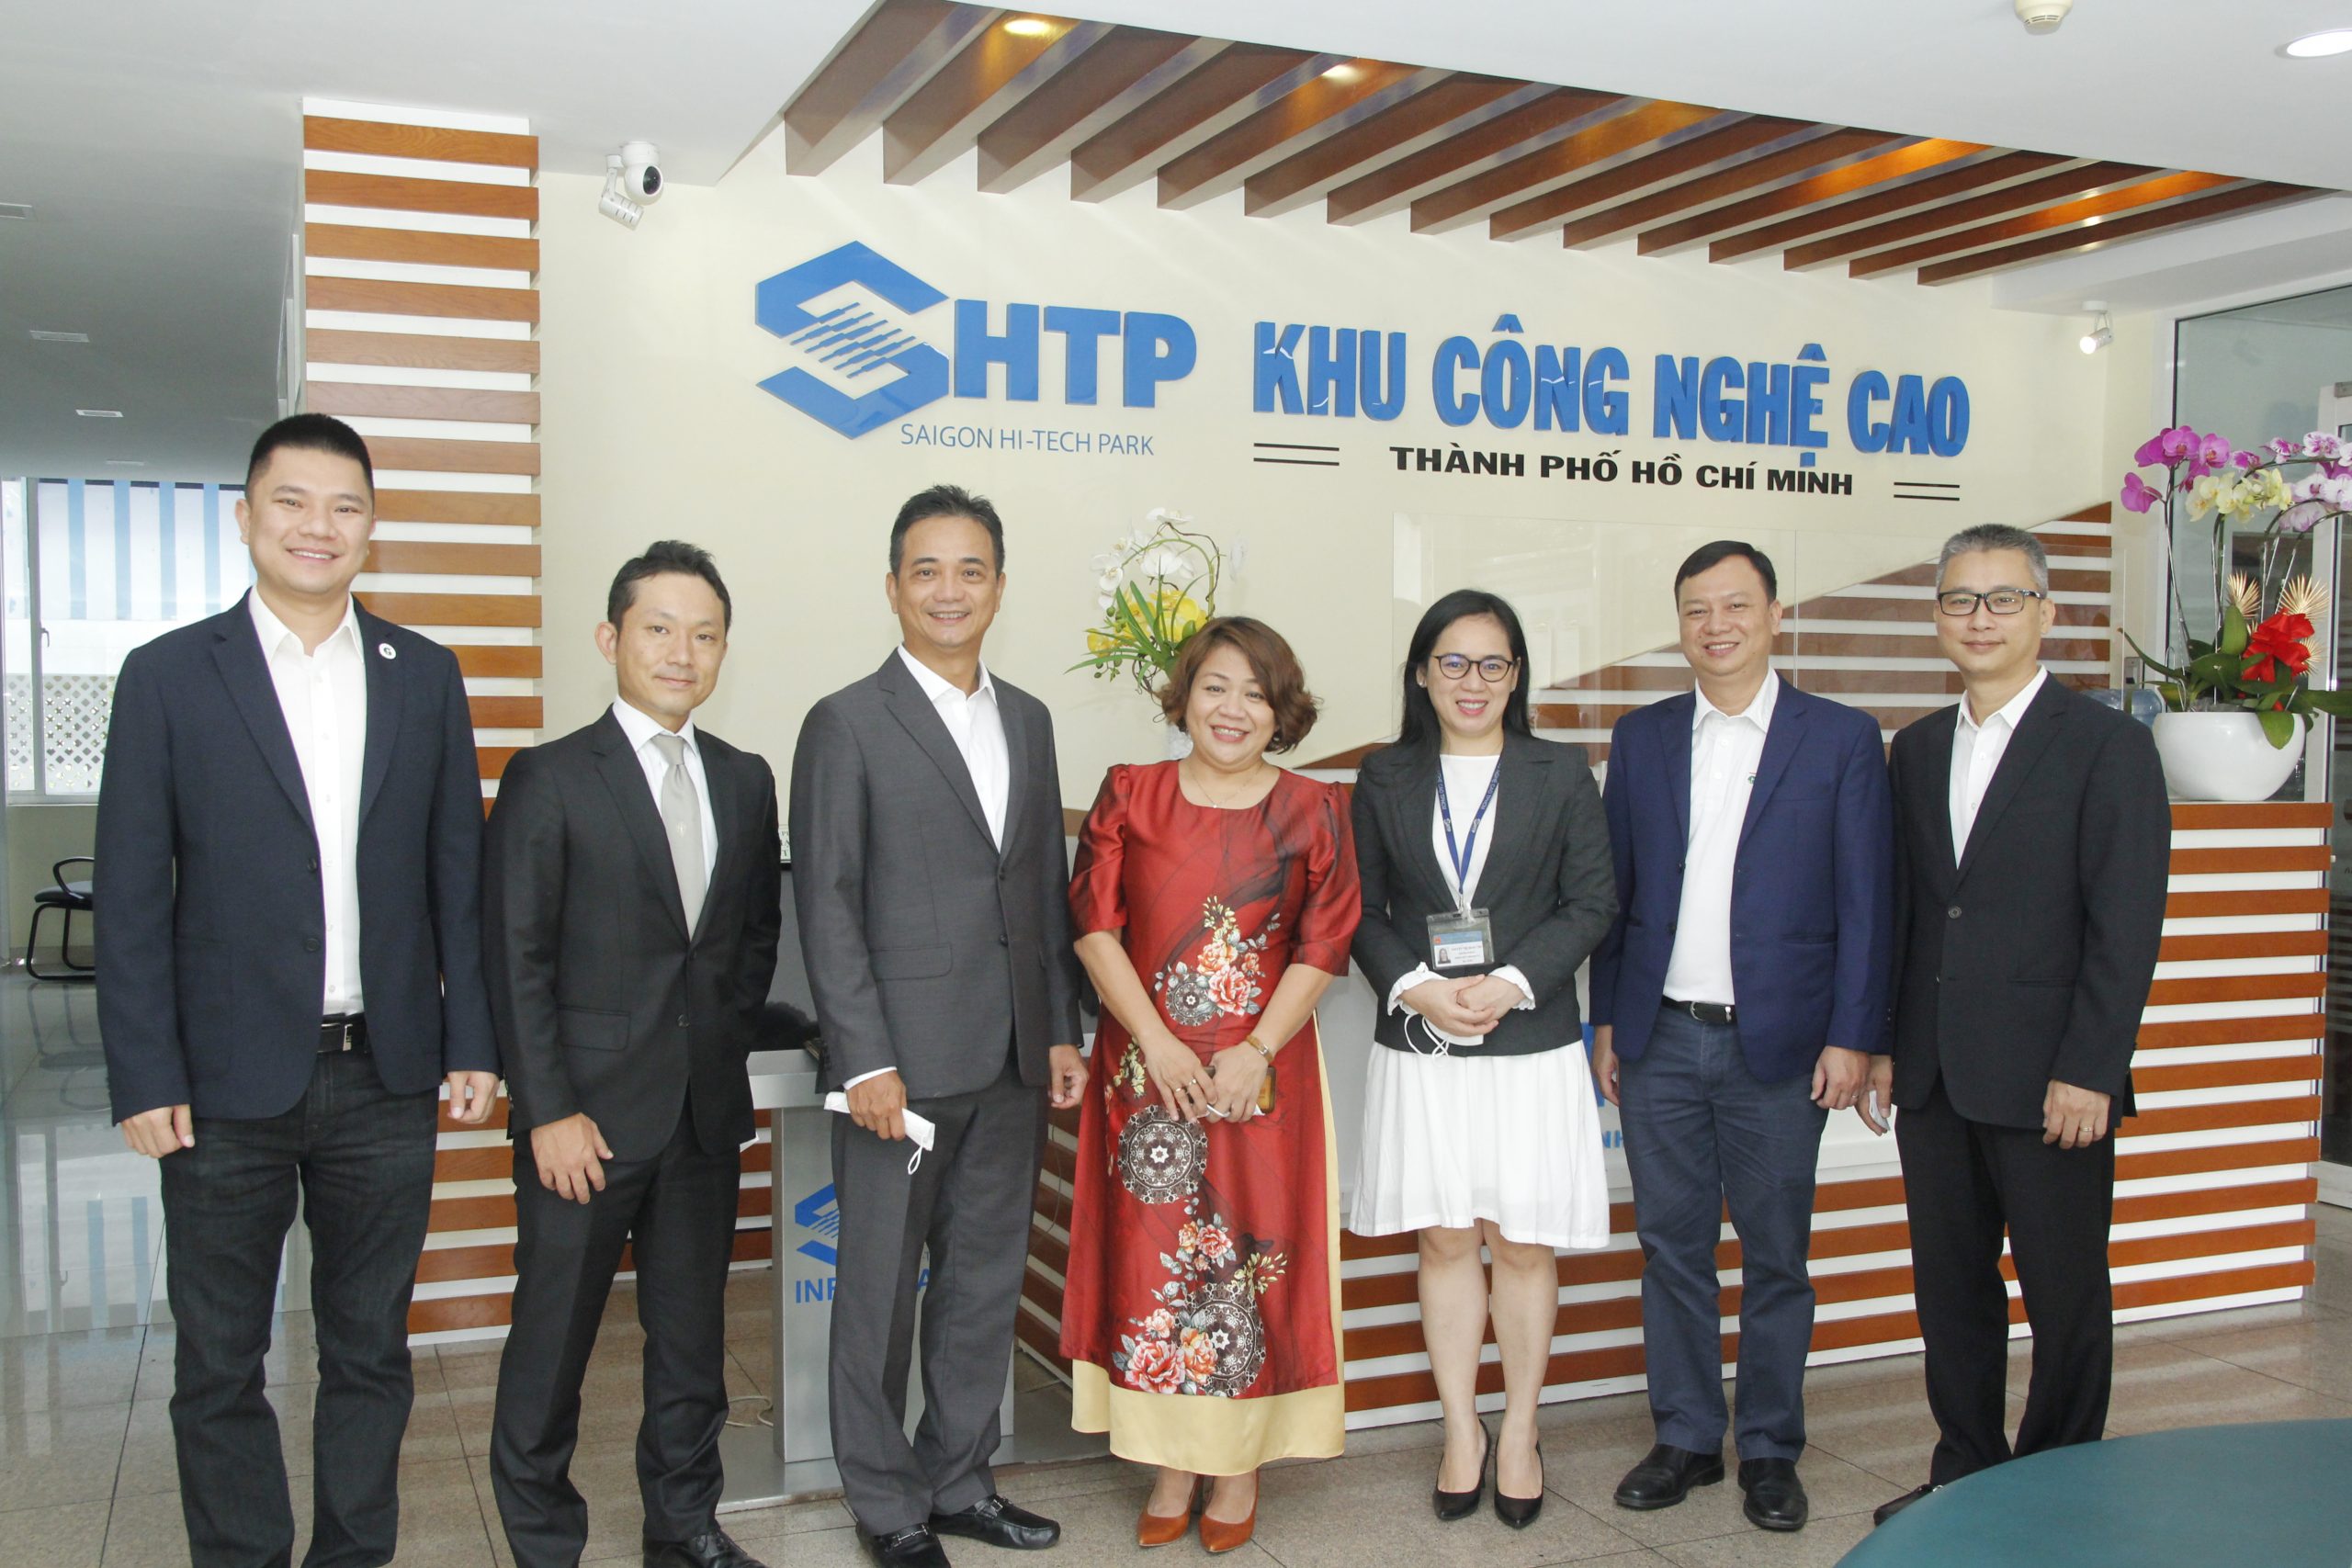 Công ty thành viên của GREENFEED Việt Nam thành lập liên doanh cùng Công ty NTT Nhật Bản xây dựng trung tâm dữ liệu tại thành phố Hồ Chí Minh